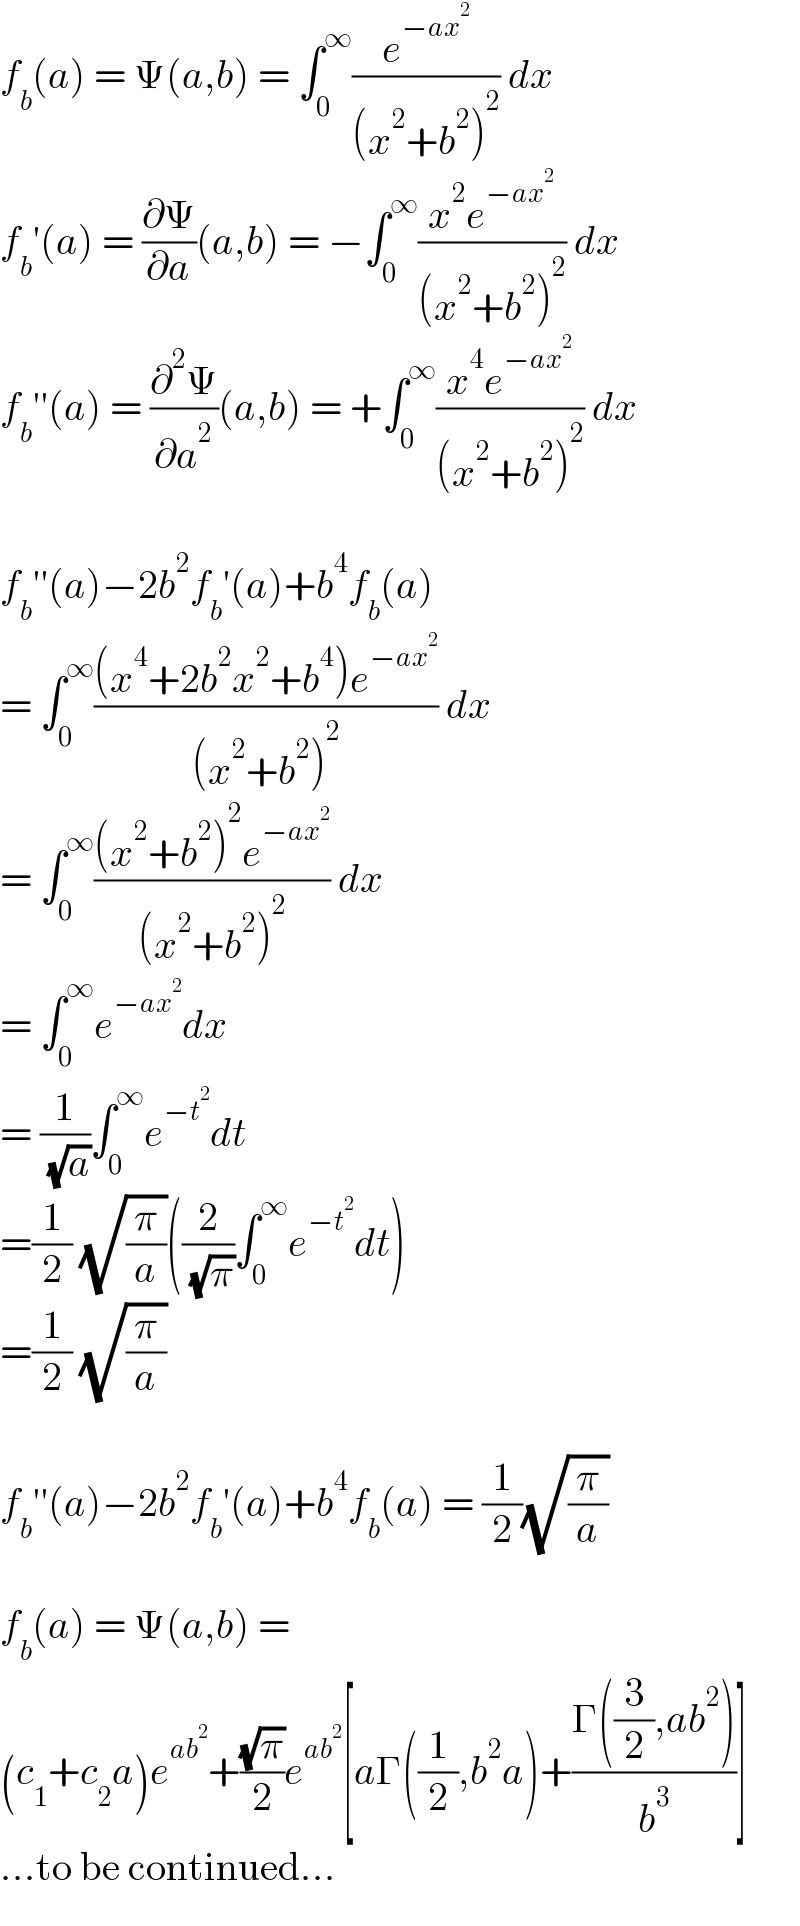 f_b (a) = Ψ(a,b) = ∫_0 ^∞ (e^(−ax^2 ) /((x^2 +b^2 )^2 )) dx  f_b ′(a) = (∂Ψ/∂a)(a,b) = −∫_0 ^∞ ((x^2 e^(−ax^2 ) )/((x^2 +b^2 )^2 )) dx  f_b ′′(a) = (∂^2 Ψ/∂a^2 )(a,b) = +∫_0 ^∞ ((x^4 e^(−ax^2 ) )/((x^2 +b^2 )^2 )) dx    f_b ′′(a)−2b^2 f_b ′(a)+b^4 f_b (a)  = ∫_0 ^∞ (((x^4 +2b^2 x^2 +b^4 )e^(−ax^2 ) )/((x^2 +b^2 )^2 )) dx  = ∫_0 ^∞ (((x^2 +b^2 )^2 e^(−ax^2 ) )/((x^2 +b^2 )^2 )) dx  = ∫_0 ^∞ e^(−ax^2 ) dx  = (1/( (√a)))∫_0 ^∞ e^(−t^2 ) dt  =(1/2) (√(π/a))((2/( (√π)))∫_0 ^∞ e^(−t^2 ) dt)  =(1/2) (√(π/a))    f_b ′′(a)−2b^2 f_b ′(a)+b^4 f_b (a) = (1/2)(√(π/a))    f_b (a) = Ψ(a,b) =  (c_1 +c_2 a)e^(ab^2 ) +((√π)/2)e^(ab^2 ) [aΓ((1/2),b^2 a)+((Γ((3/2),ab^2 ))/b^3 )]  ...to be continued...  